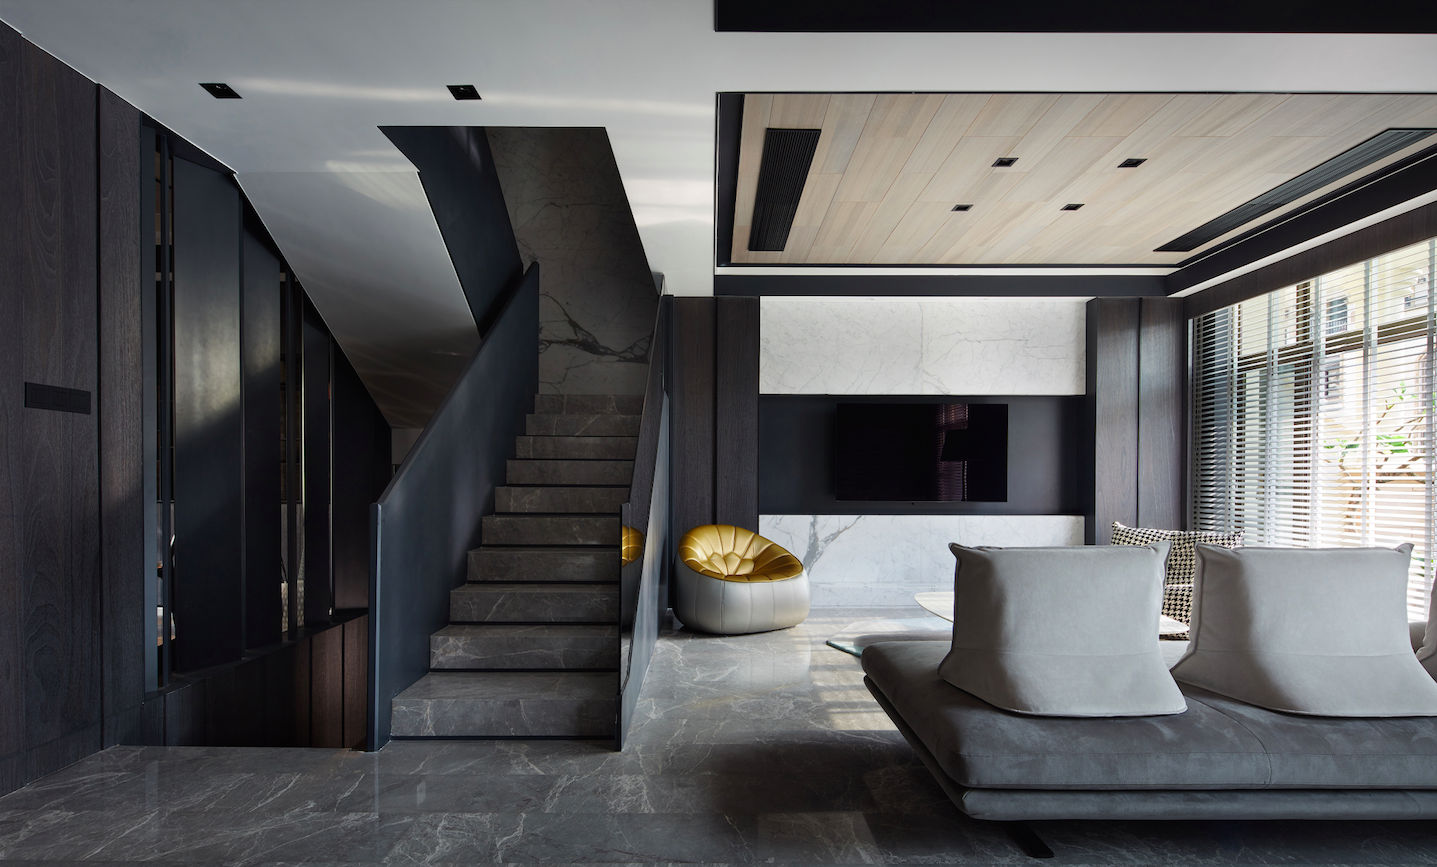 Go dark: Decadent black interior ideas to sex up your home